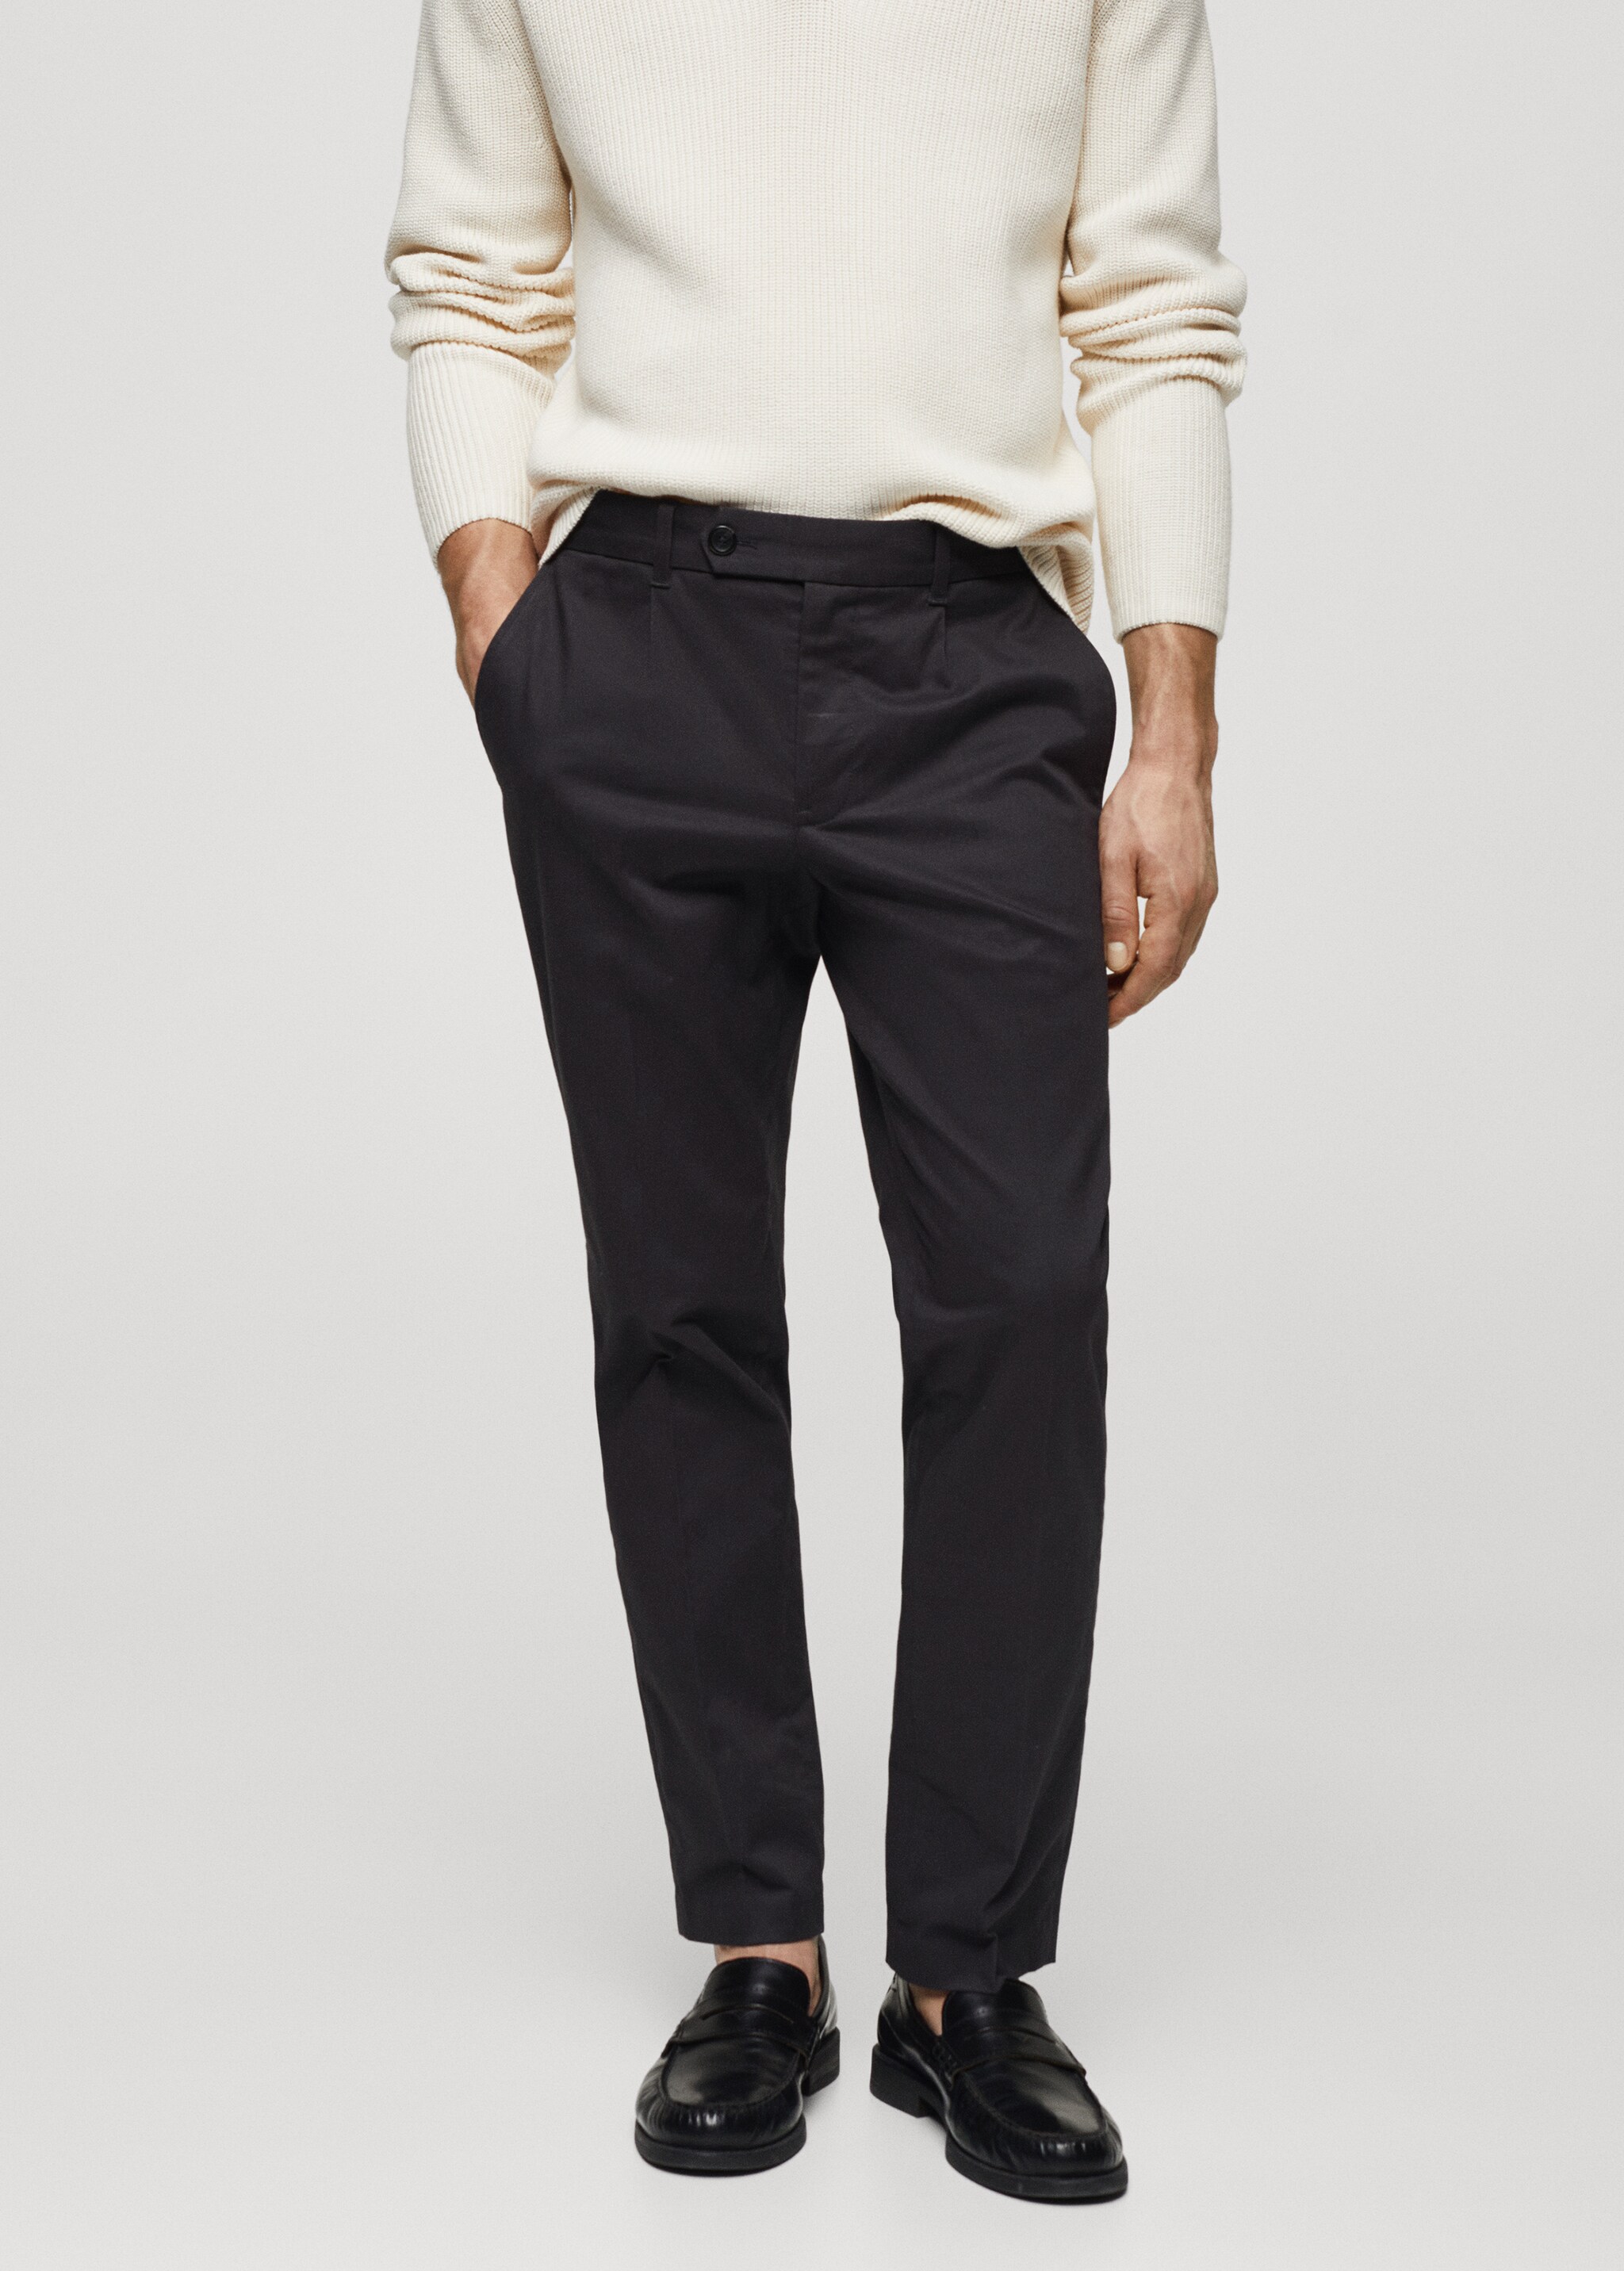 Pantalón algodón slim fit pinzas - Plano medio